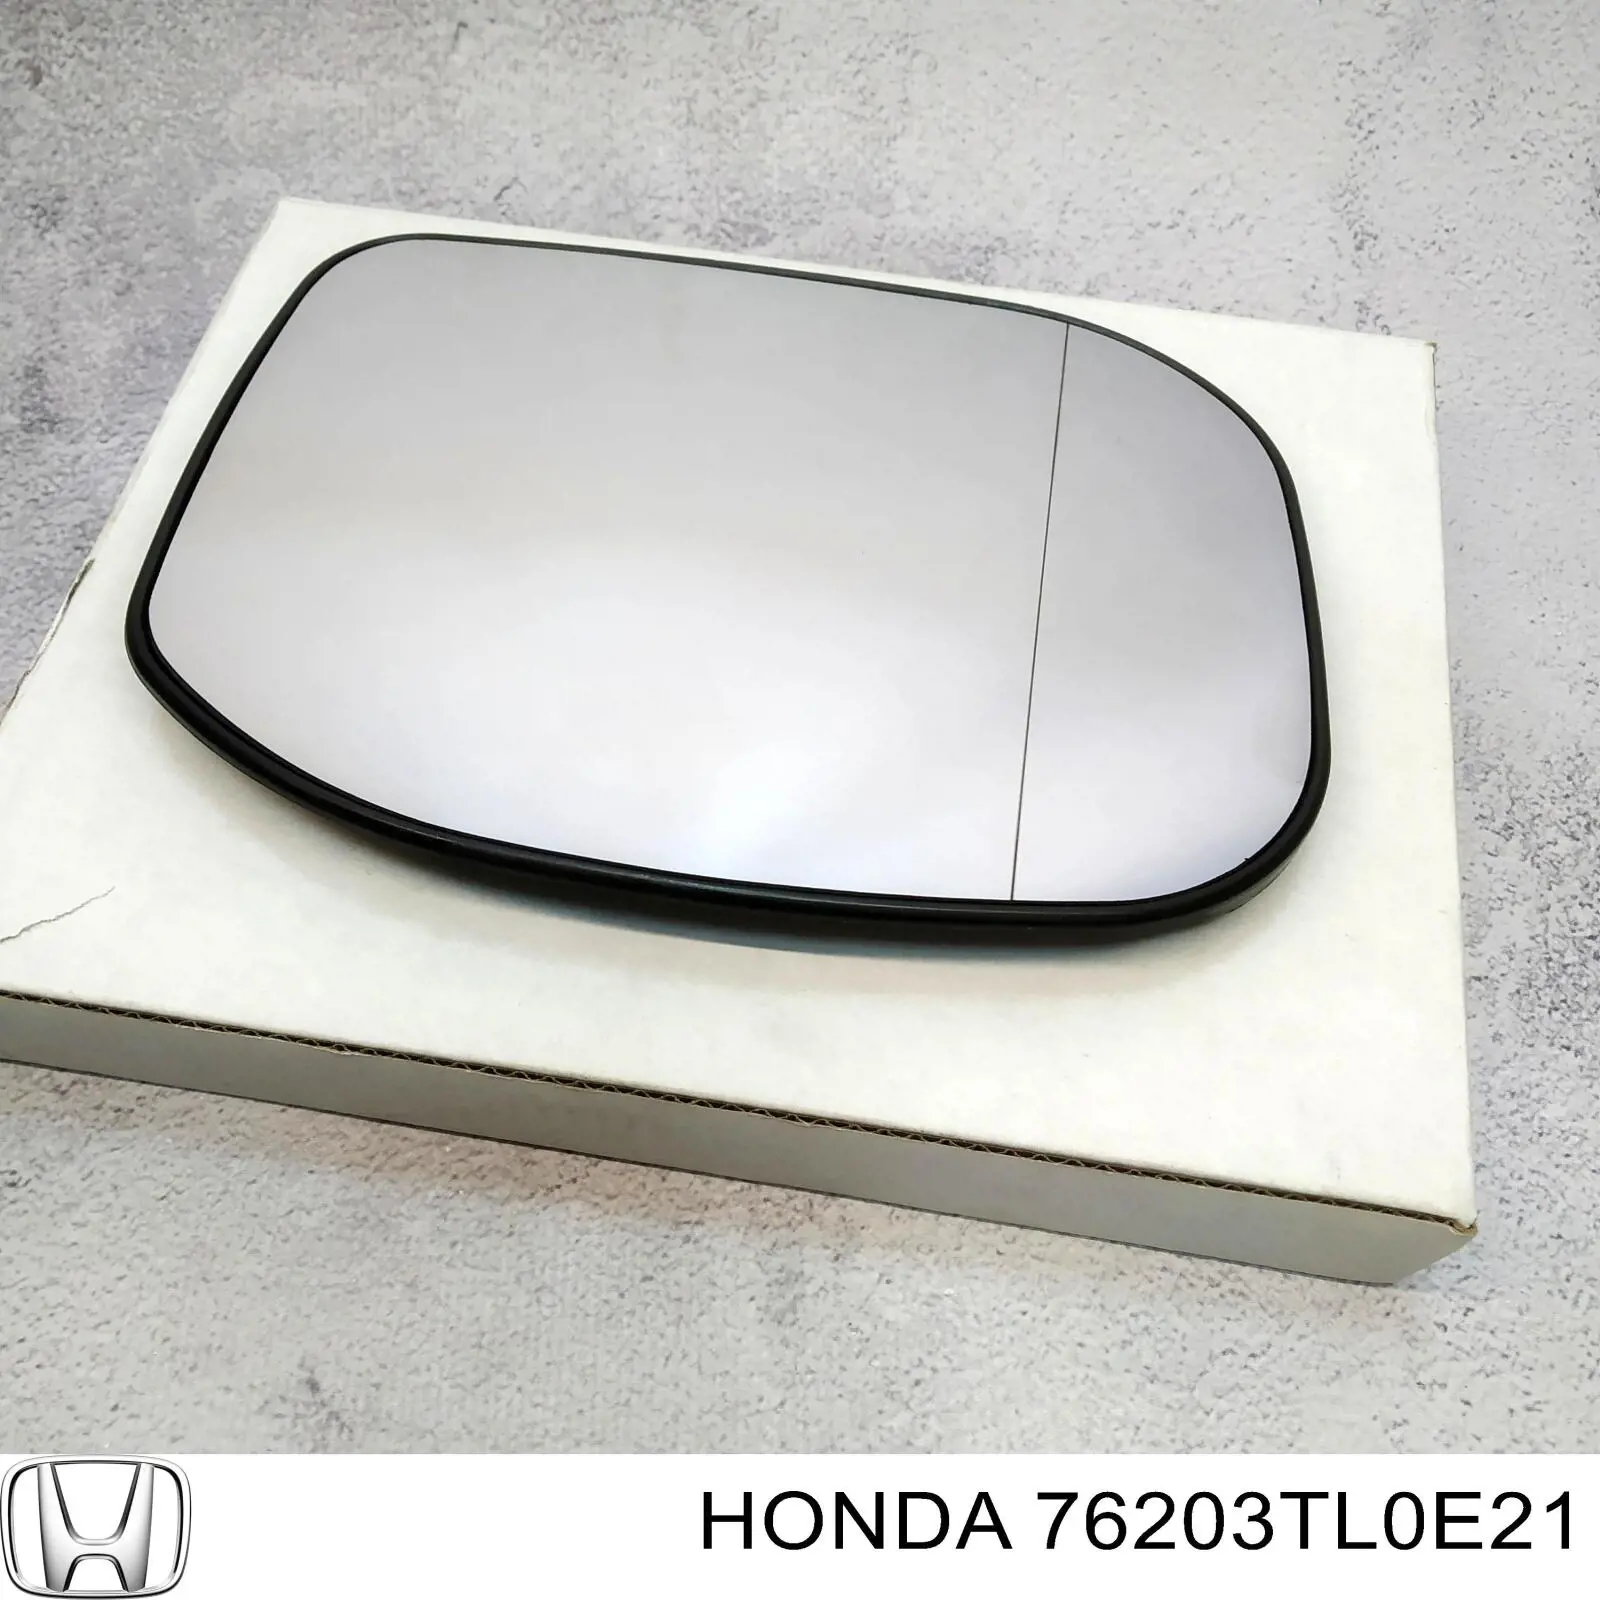 Зеркальный элемент зеркала заднего вида HONDA 76203TL0E21